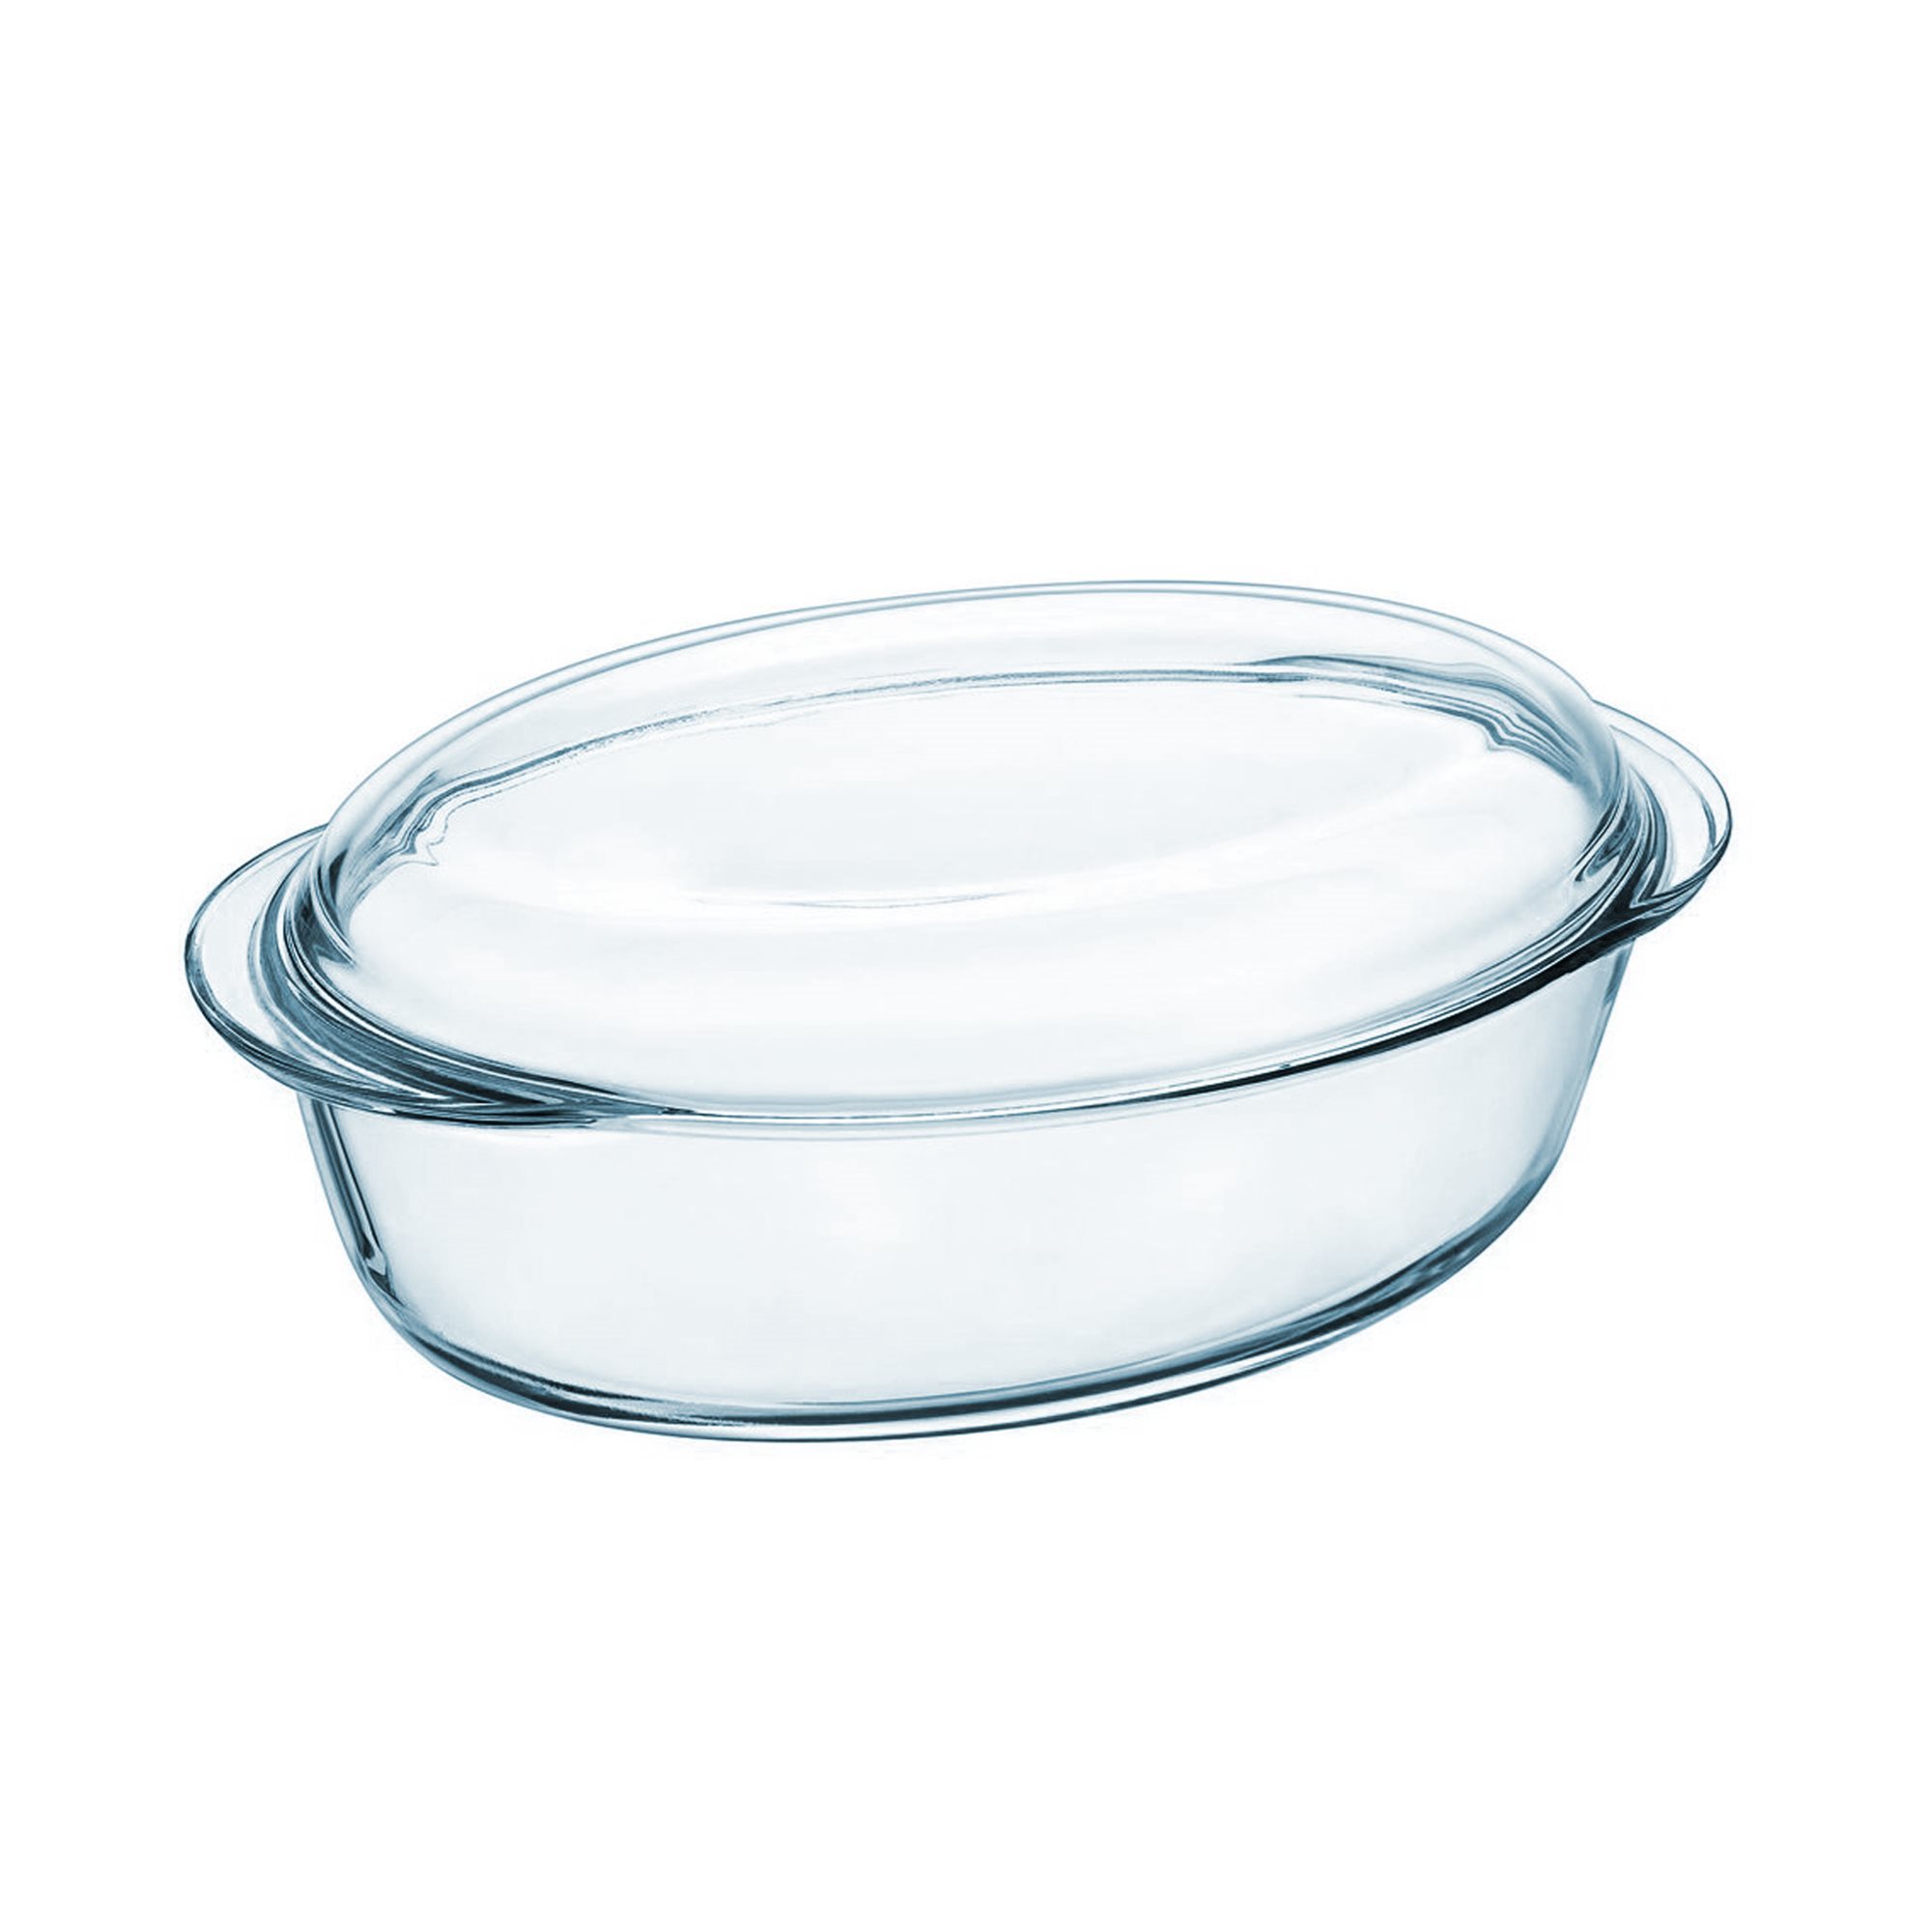 Piatto ovale con coperchio, in vetro resistente al calore, 3,1 L + 1 L,  Essentials - Pyrex